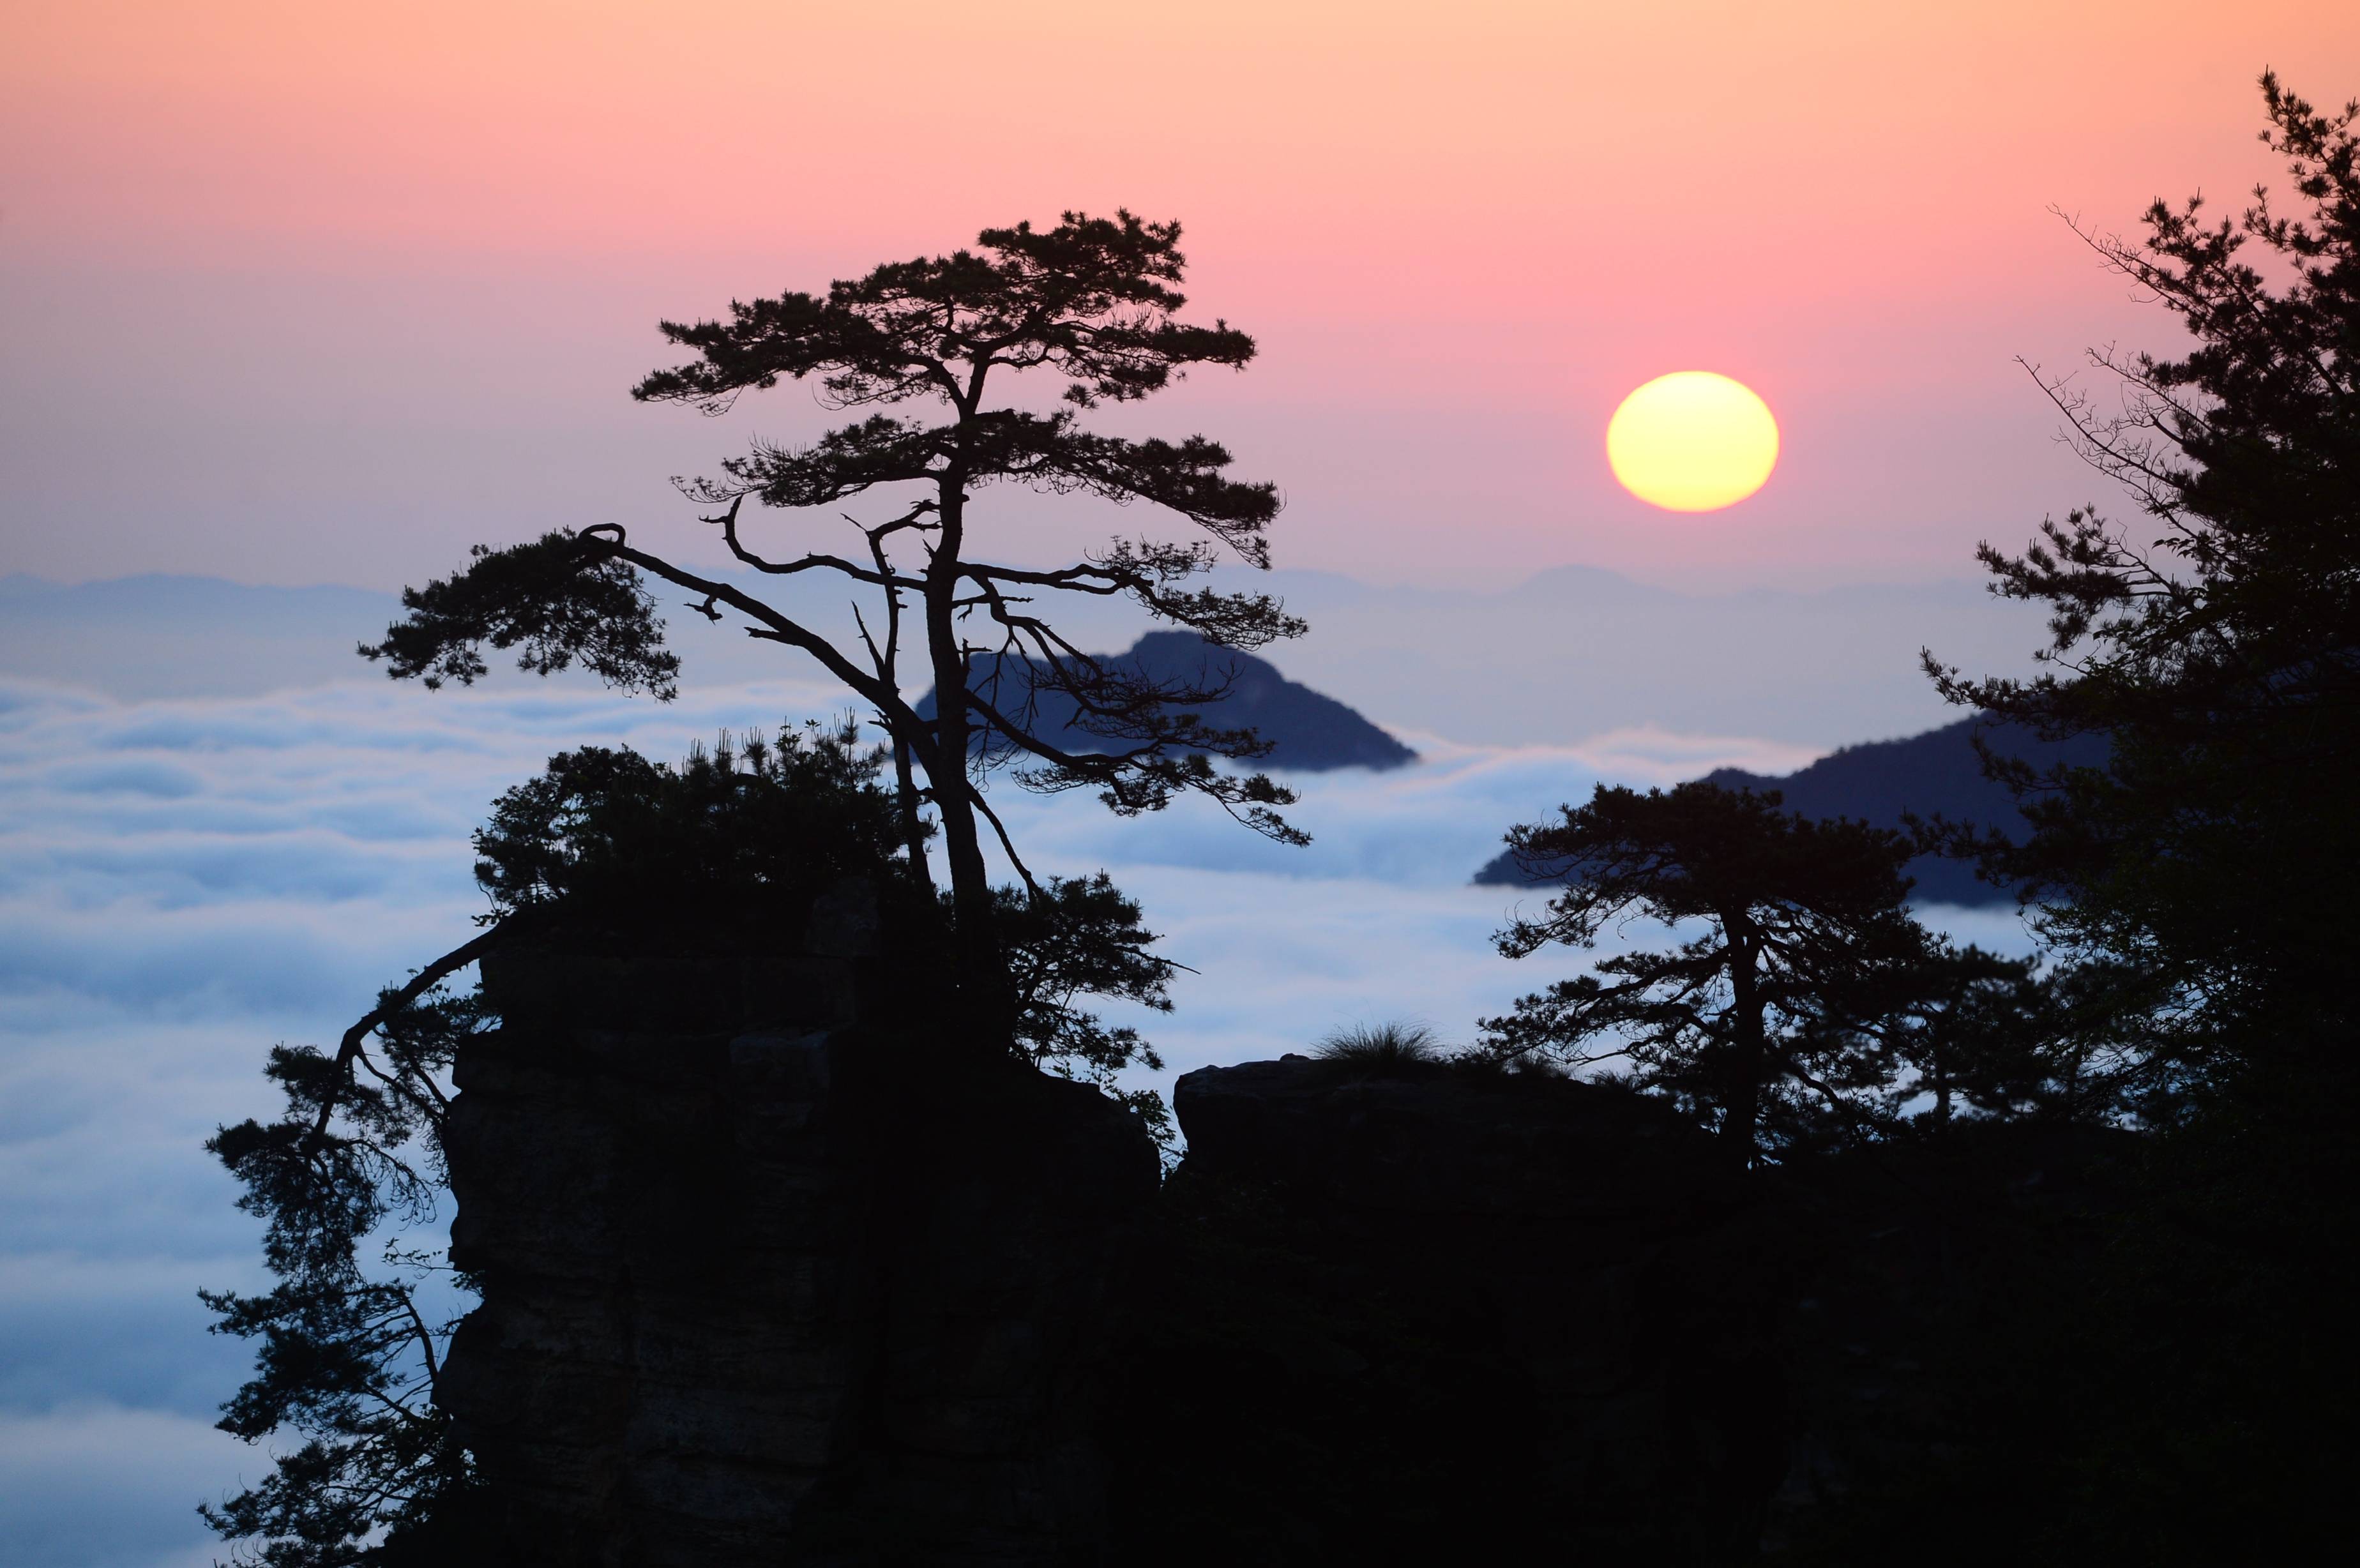 张家界天子山索道观景台拍摄的日出(资料图)返回搜狐,查看更多